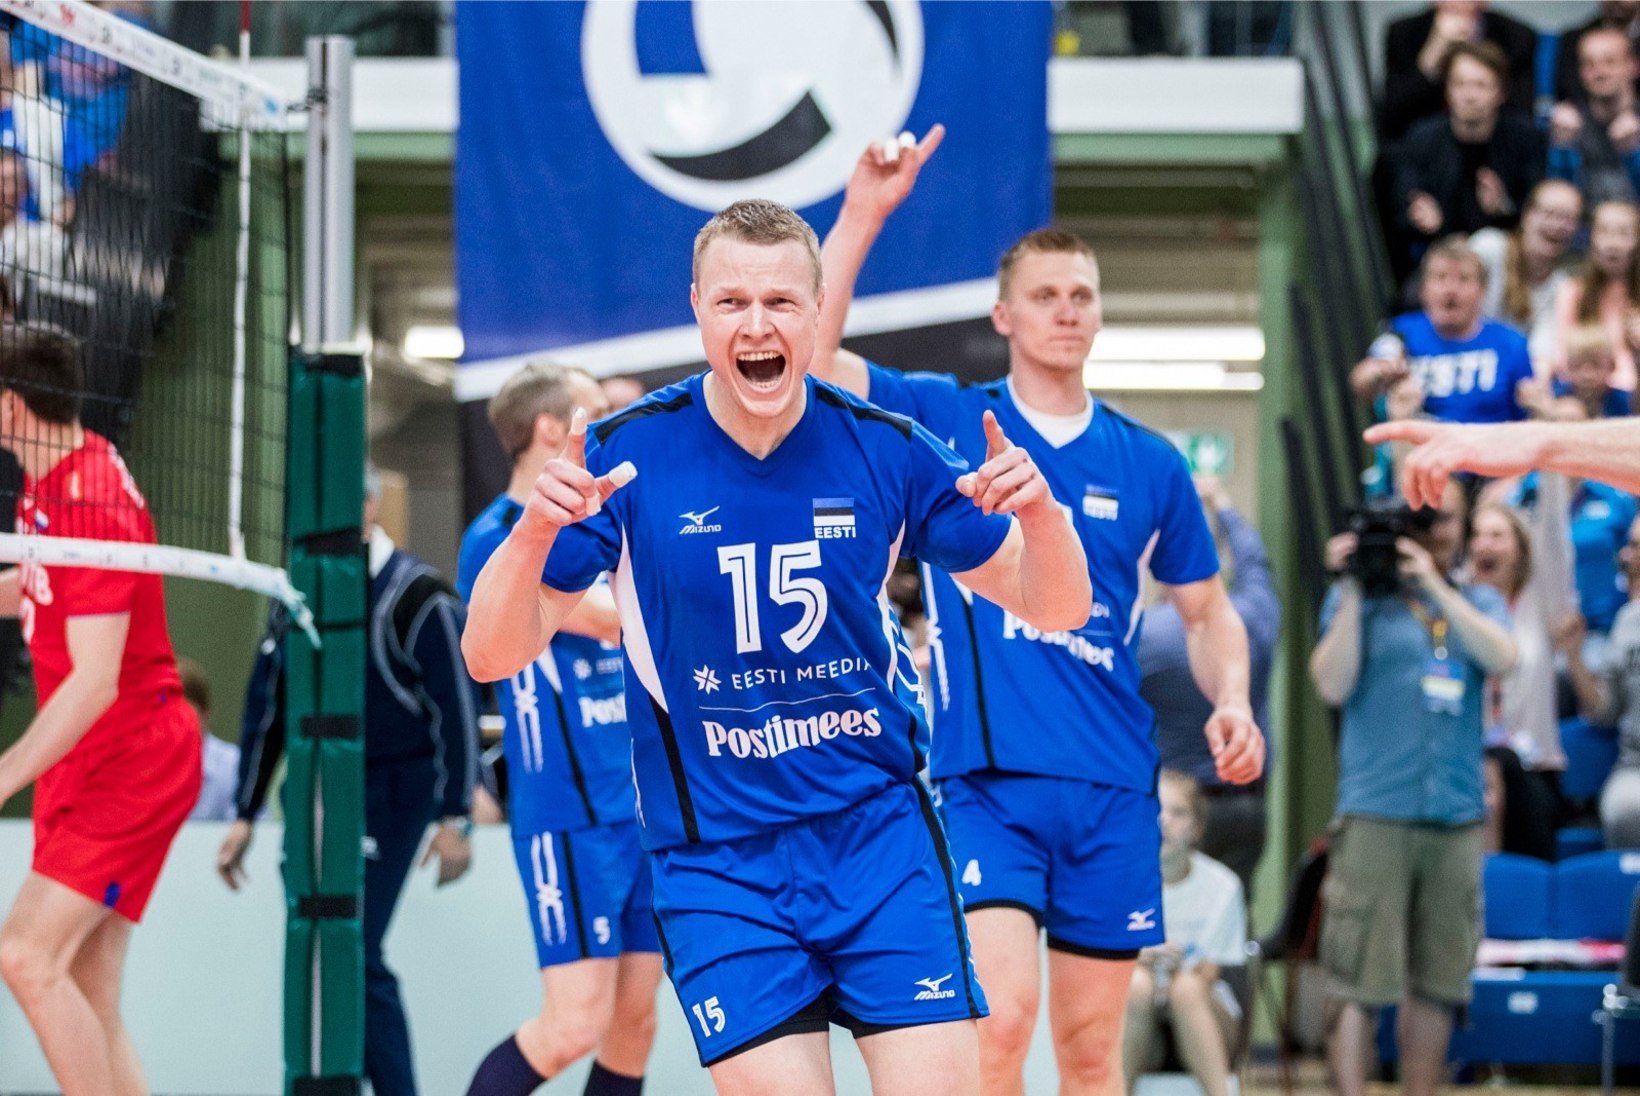 Võrkpallikoondise nurgaründaja valiti Soome liiga hooaja parimaks mängijaks